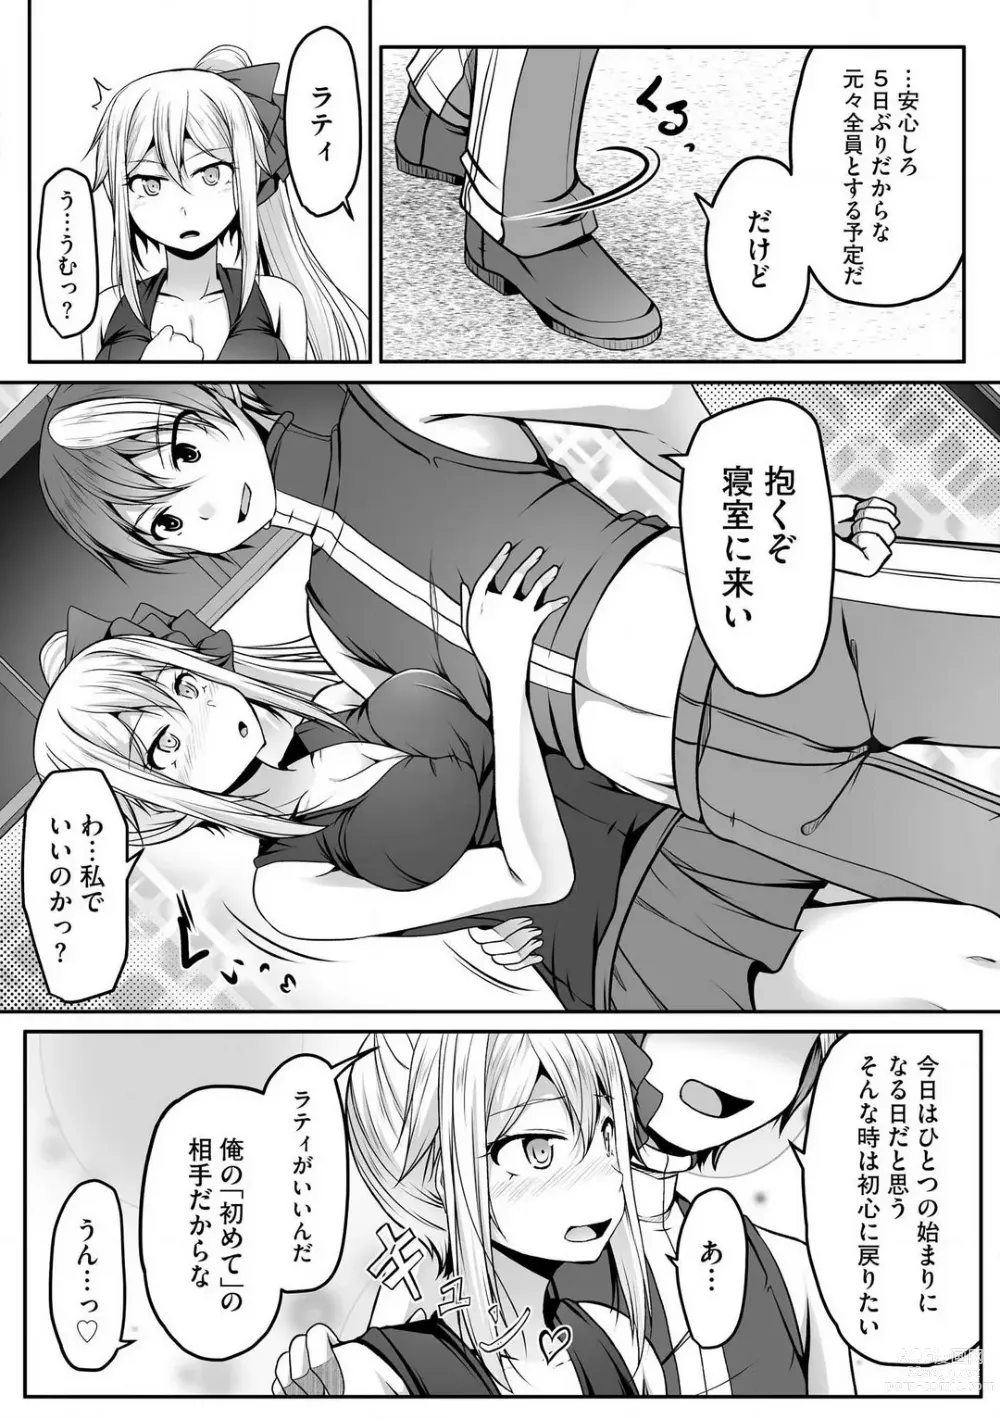 Page 350 of manga Cheat Skill Shihai